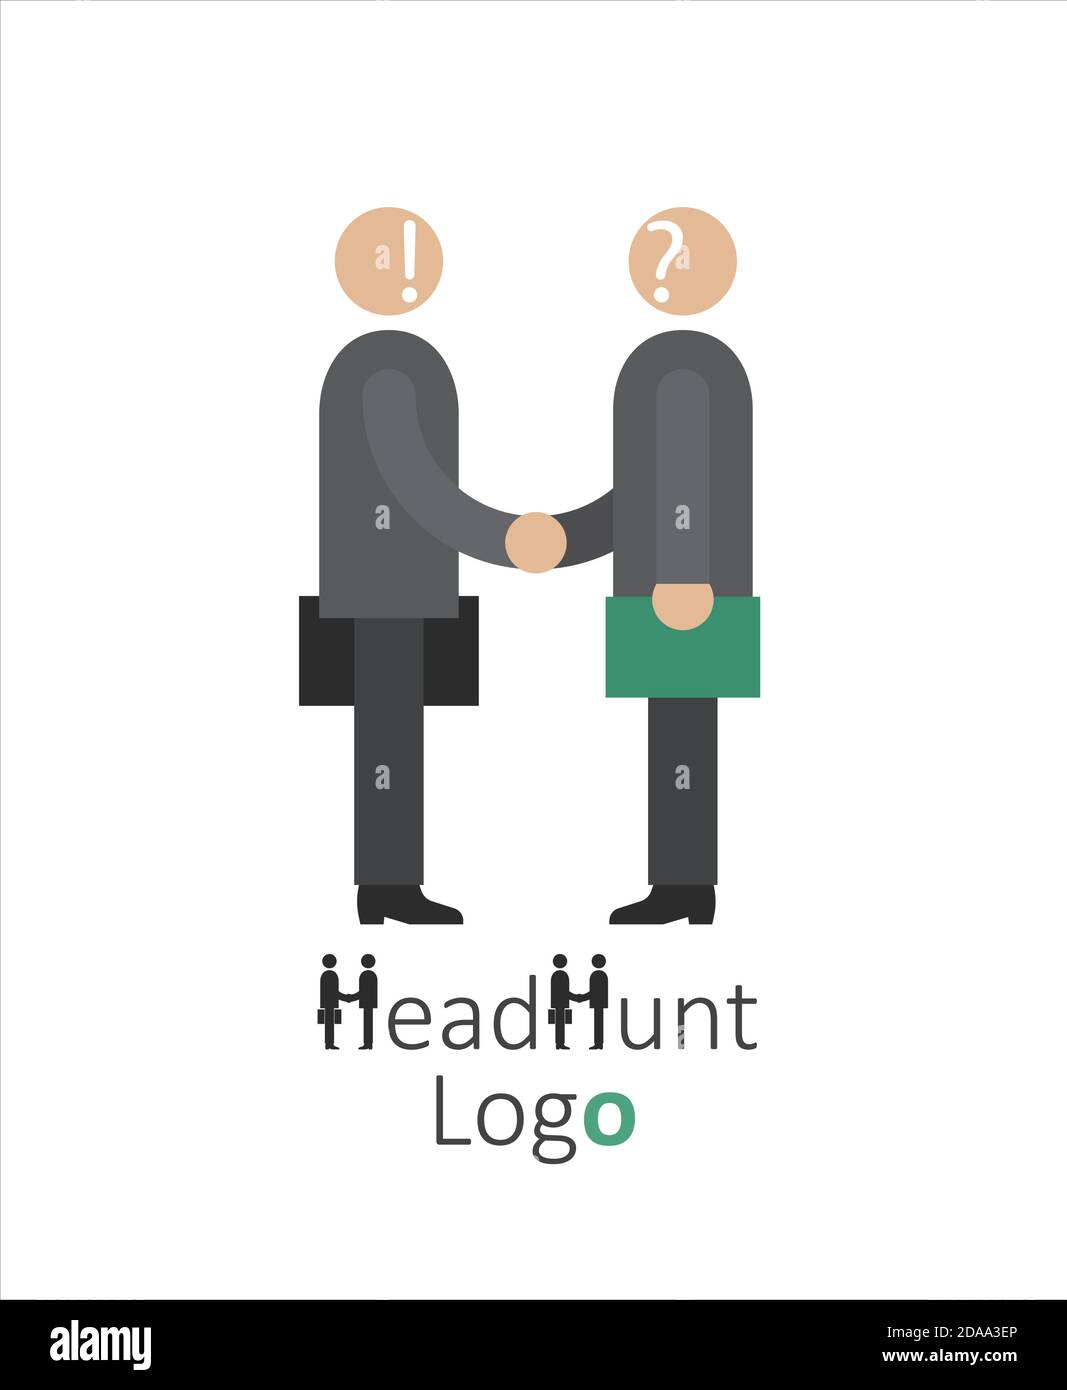 Logo für Headhunting Unternehmen, Jobsuche, Vorstellungsgespräch, Mitarbeiter-Suche Symbol Konzept, Headhunting, Vektor-Illustration Stock Vektor